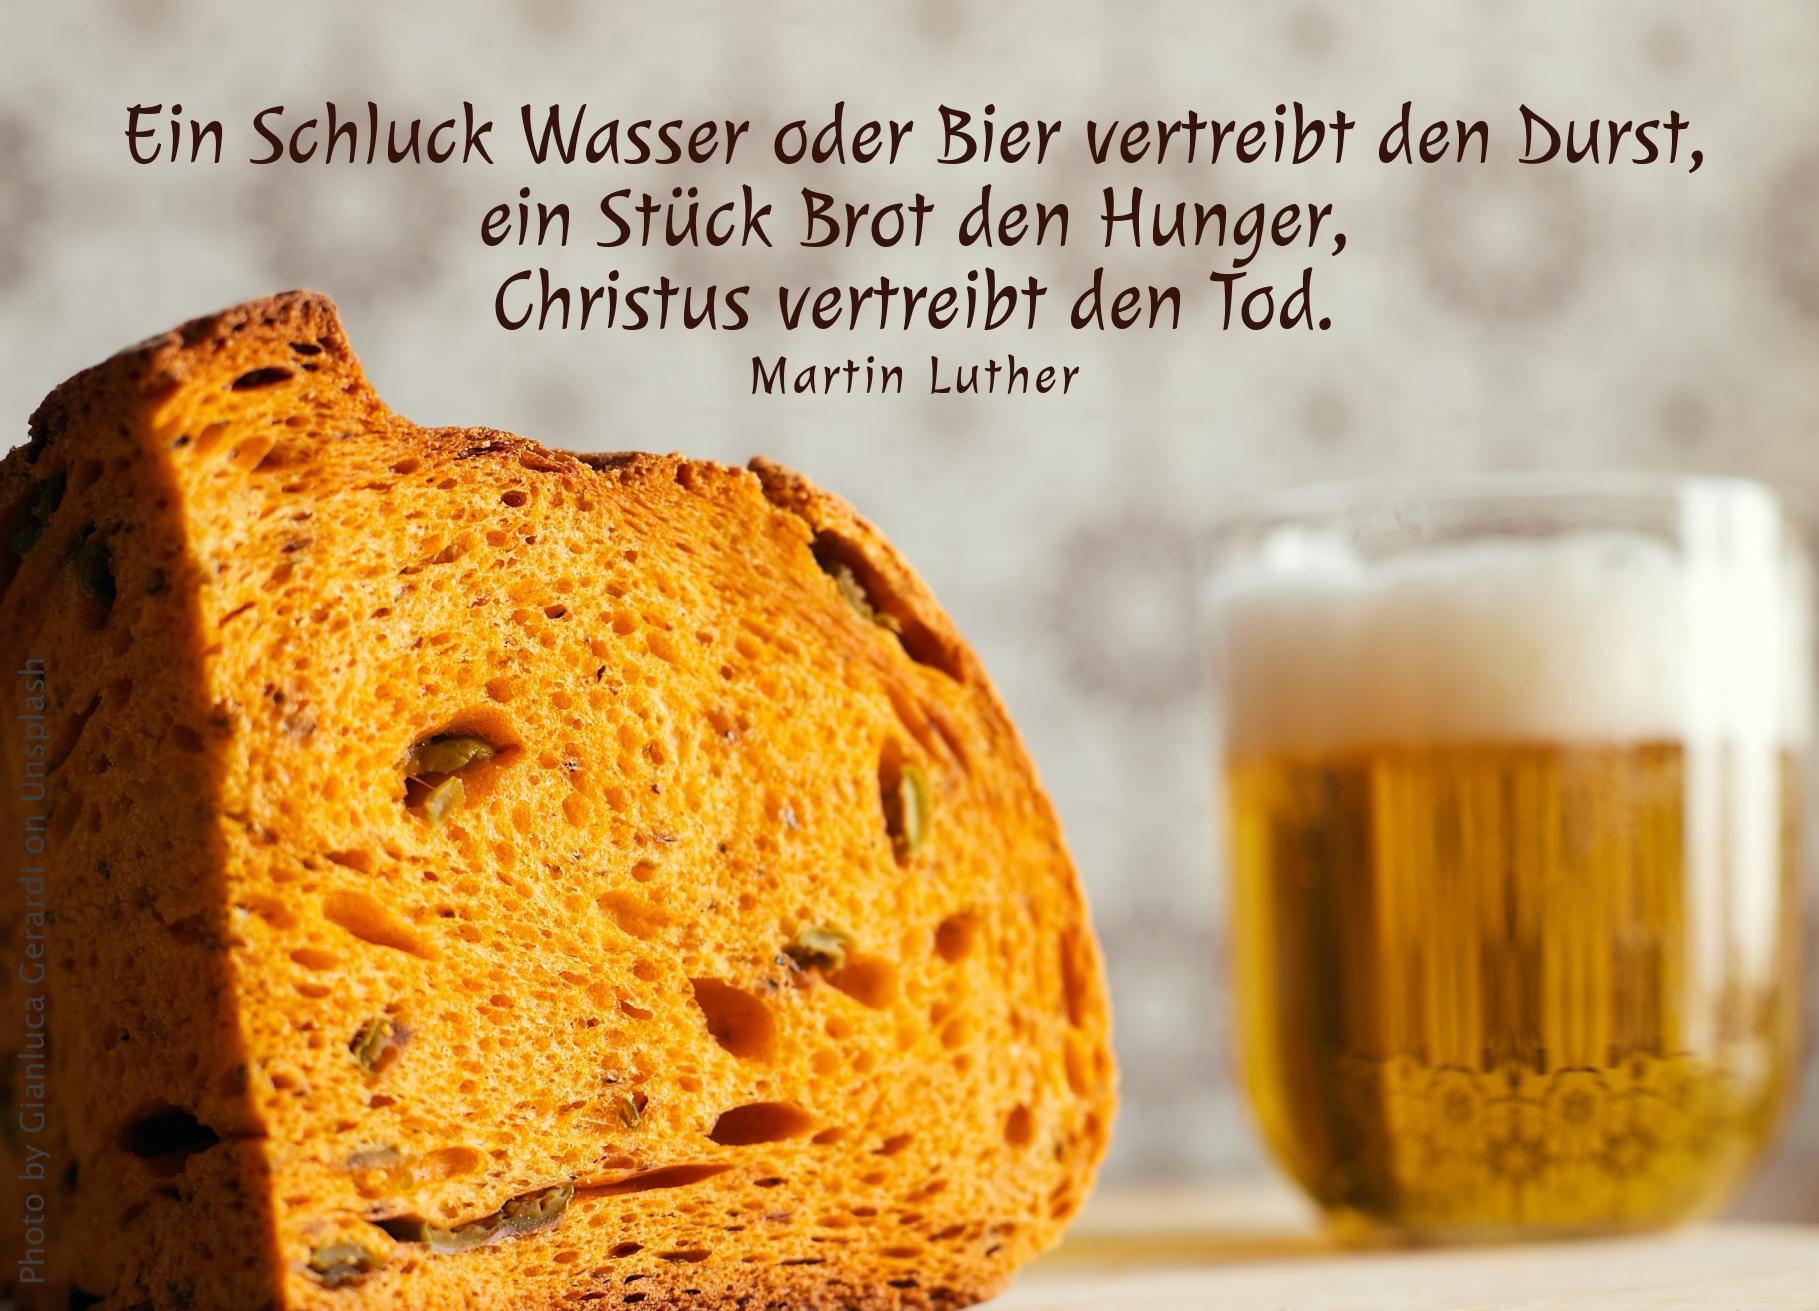 Brot und Bier